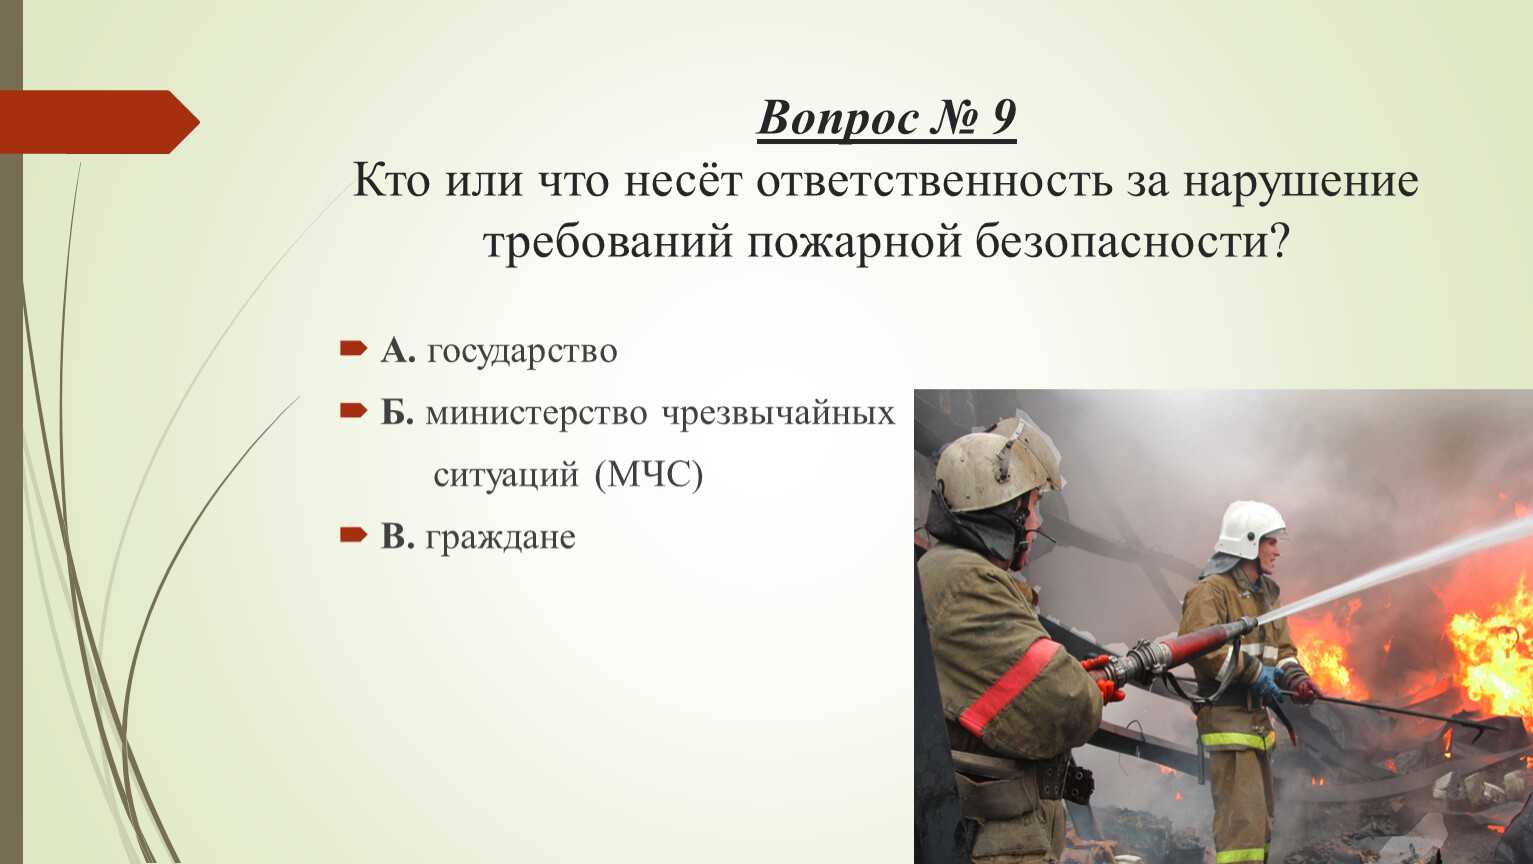 Ответственность за нарушение требований пожарной безопасности. Требования пожарной безопасности. Интерактивная презентация по ОБЖ пожарная безопасность. Права и обязанности граждан в области пожарной безопасности.